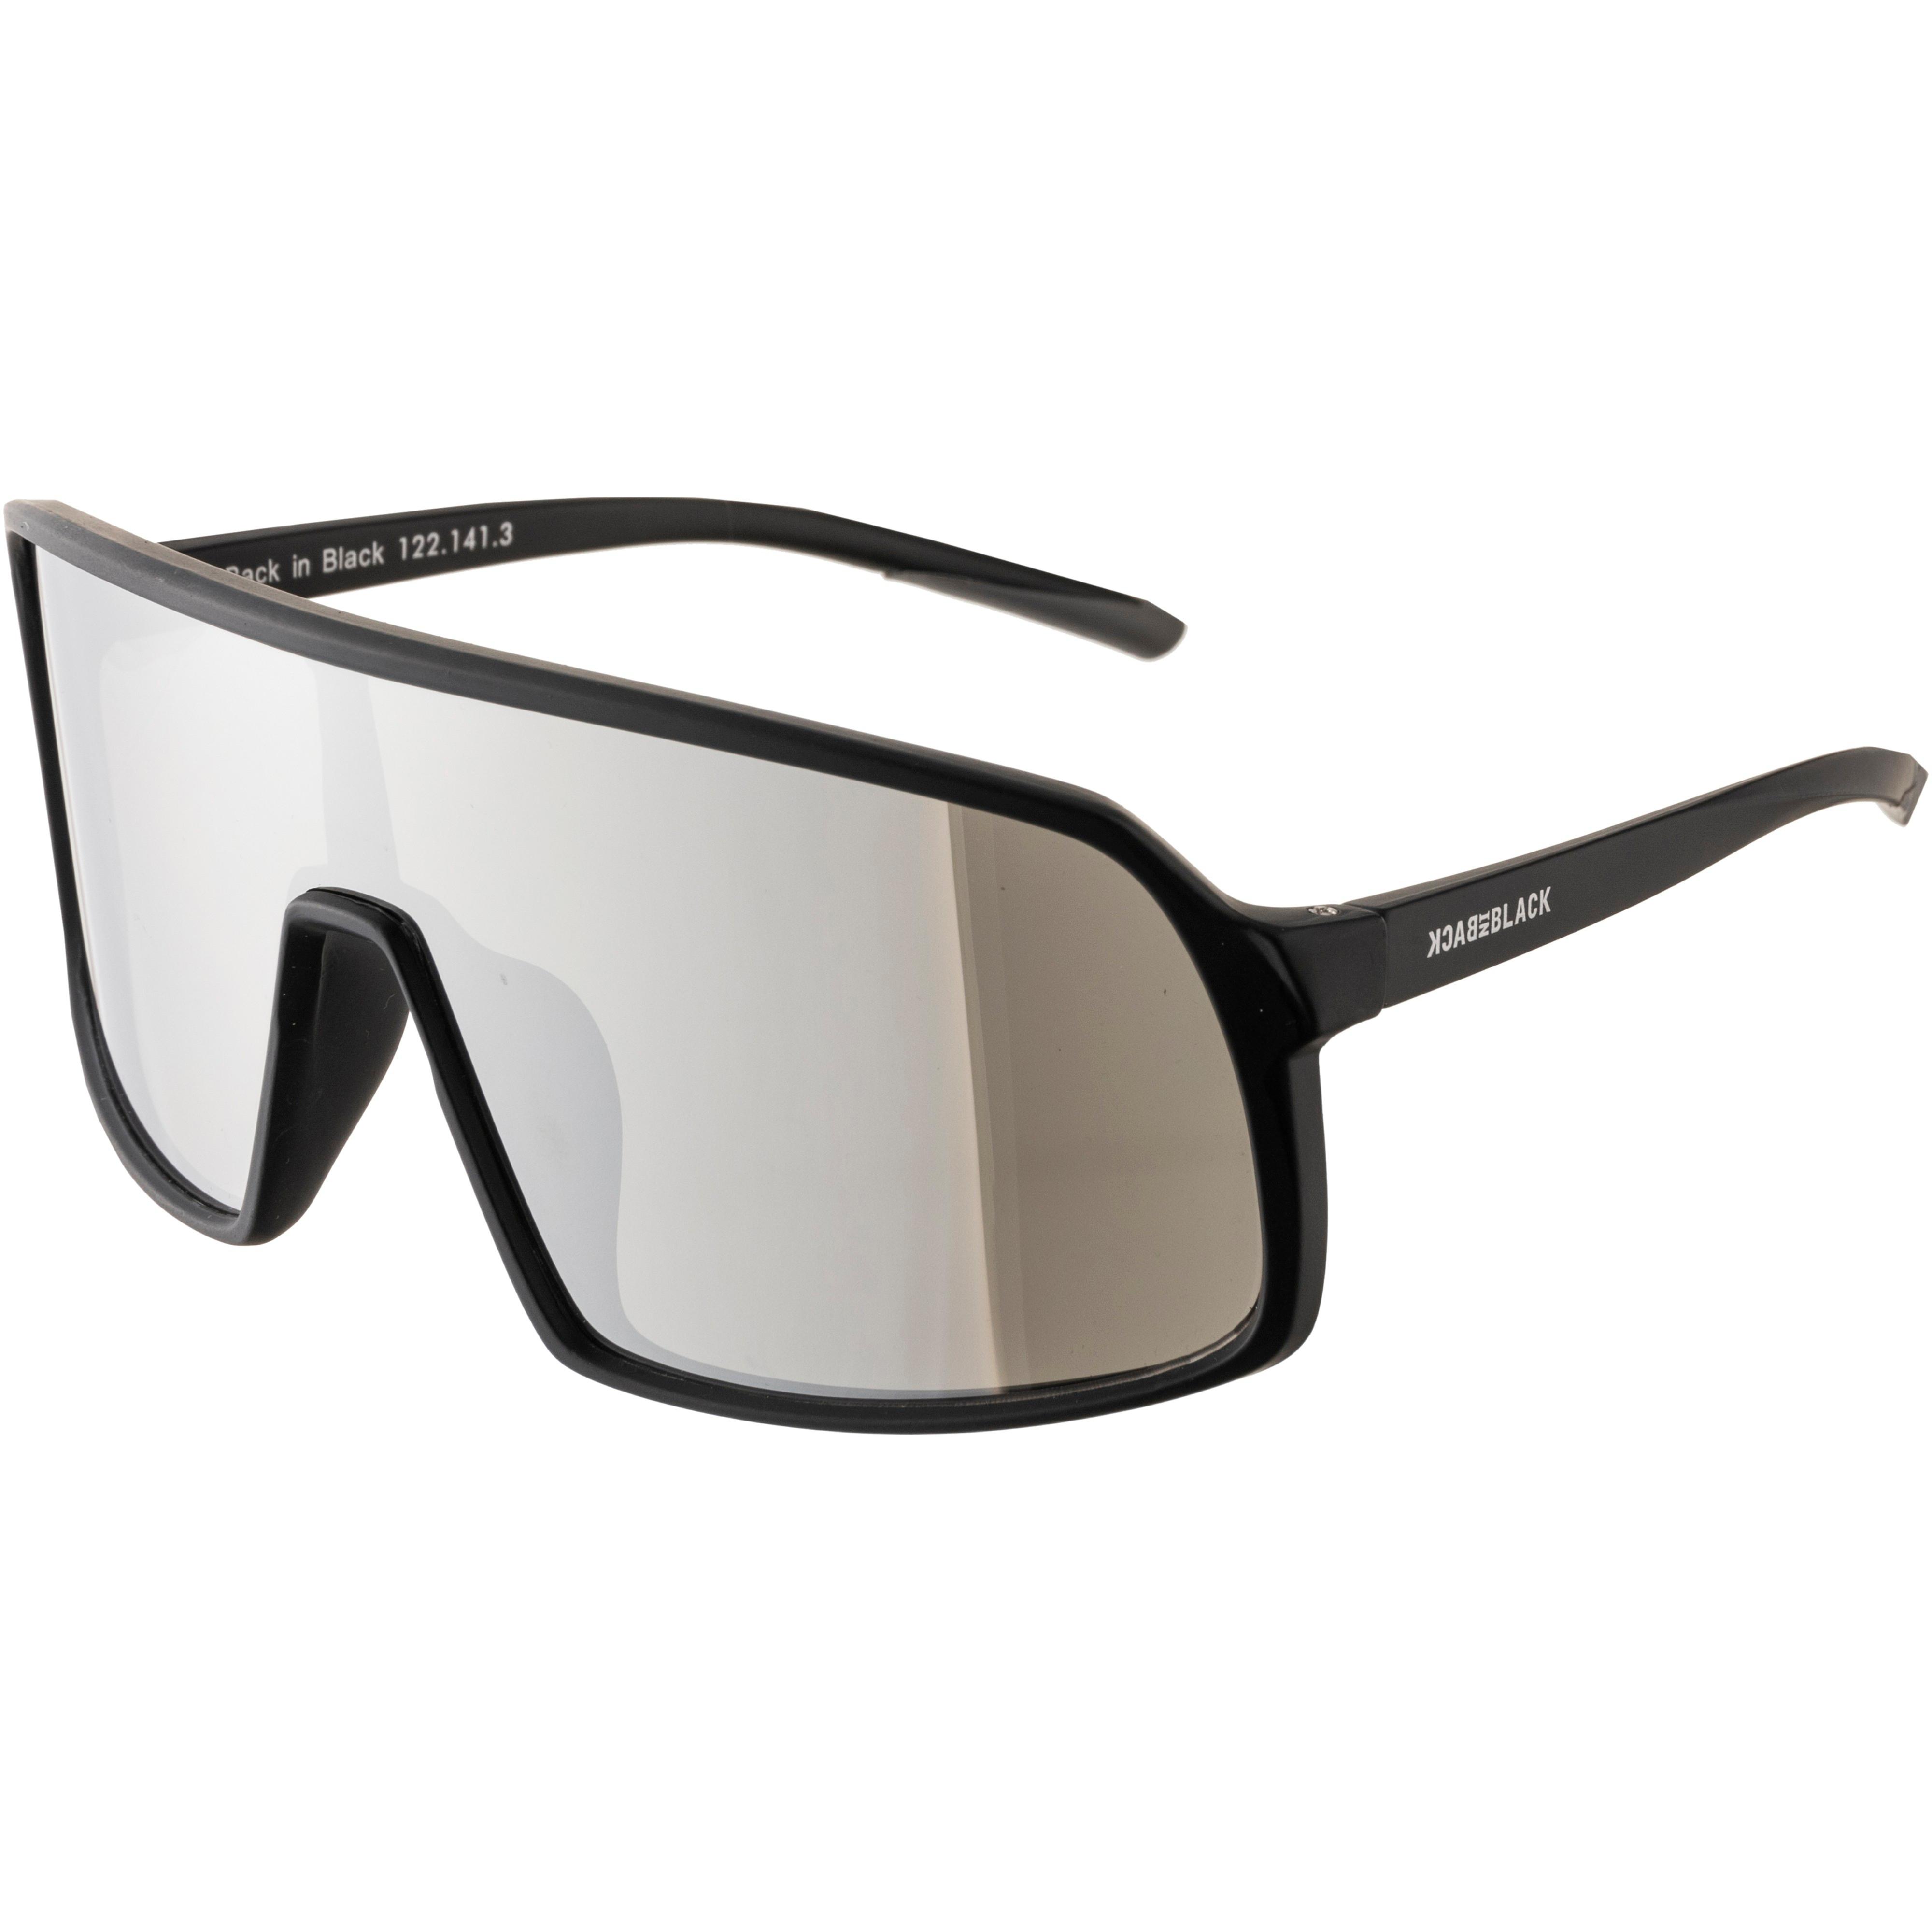 Black Brille kaufen SportScheck im mirror in - Online von matt silver Shop Back black